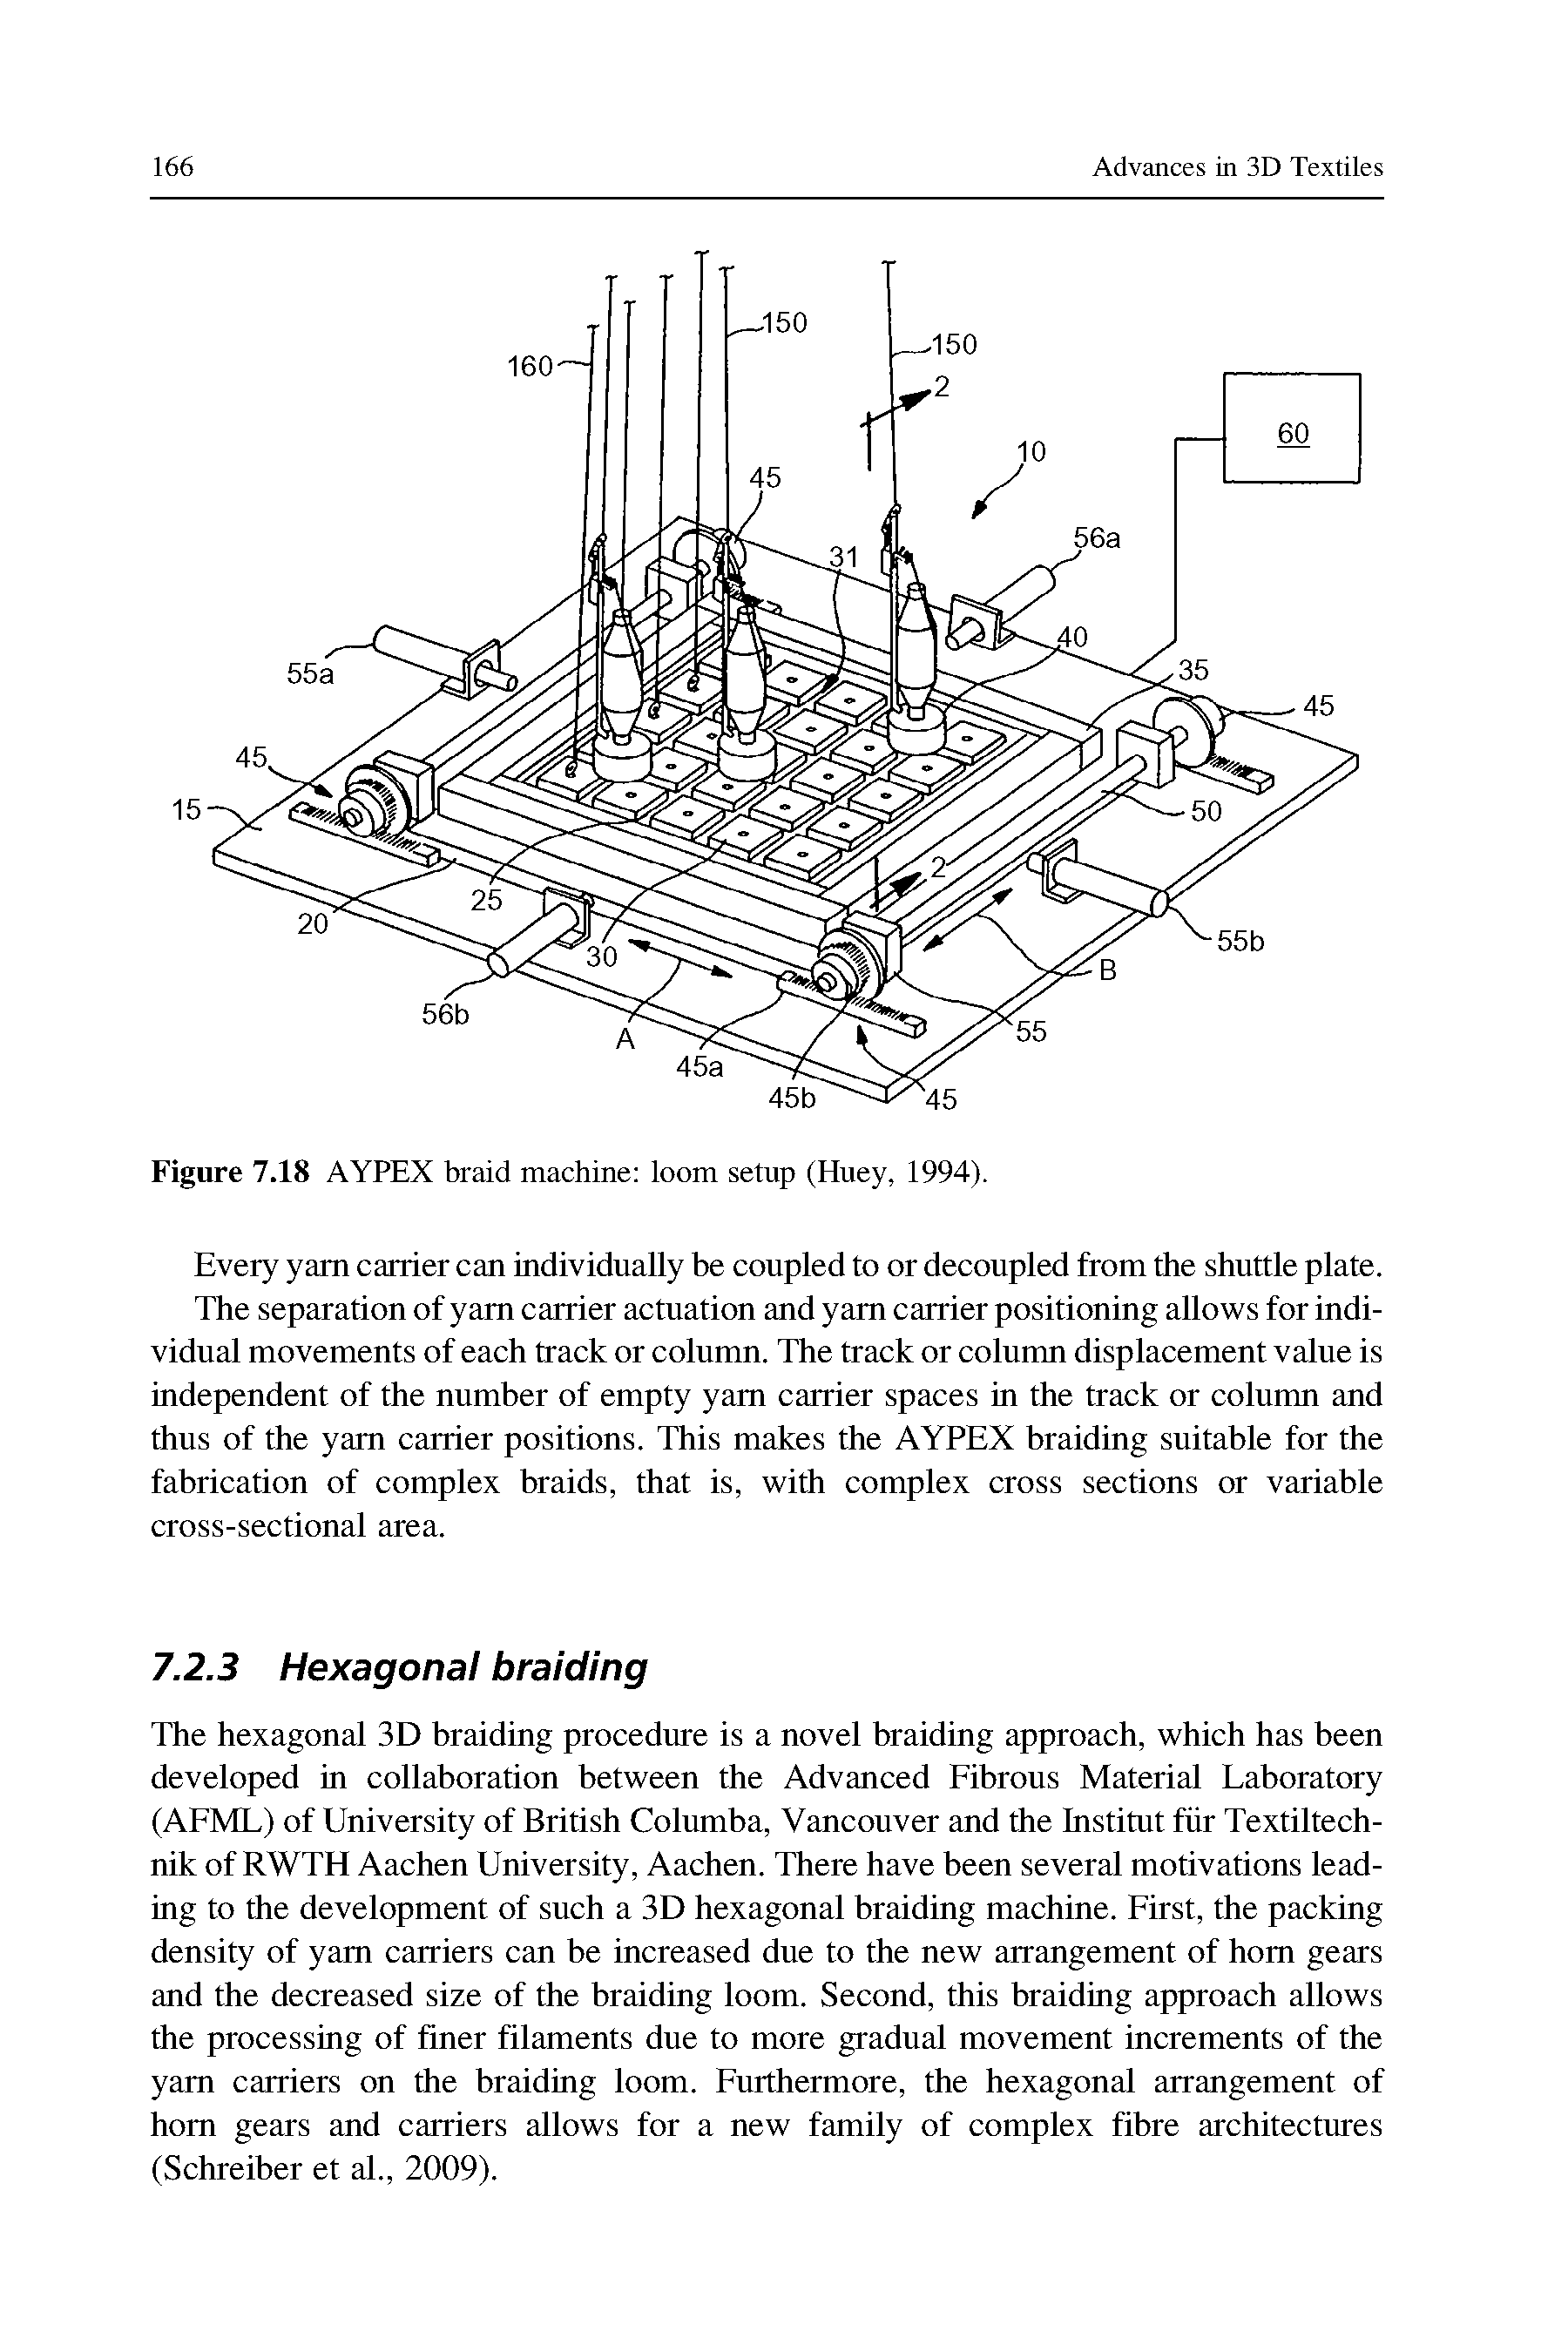 Figure 7.18 AYPEX braid machine loom setup (Huey, 1994).